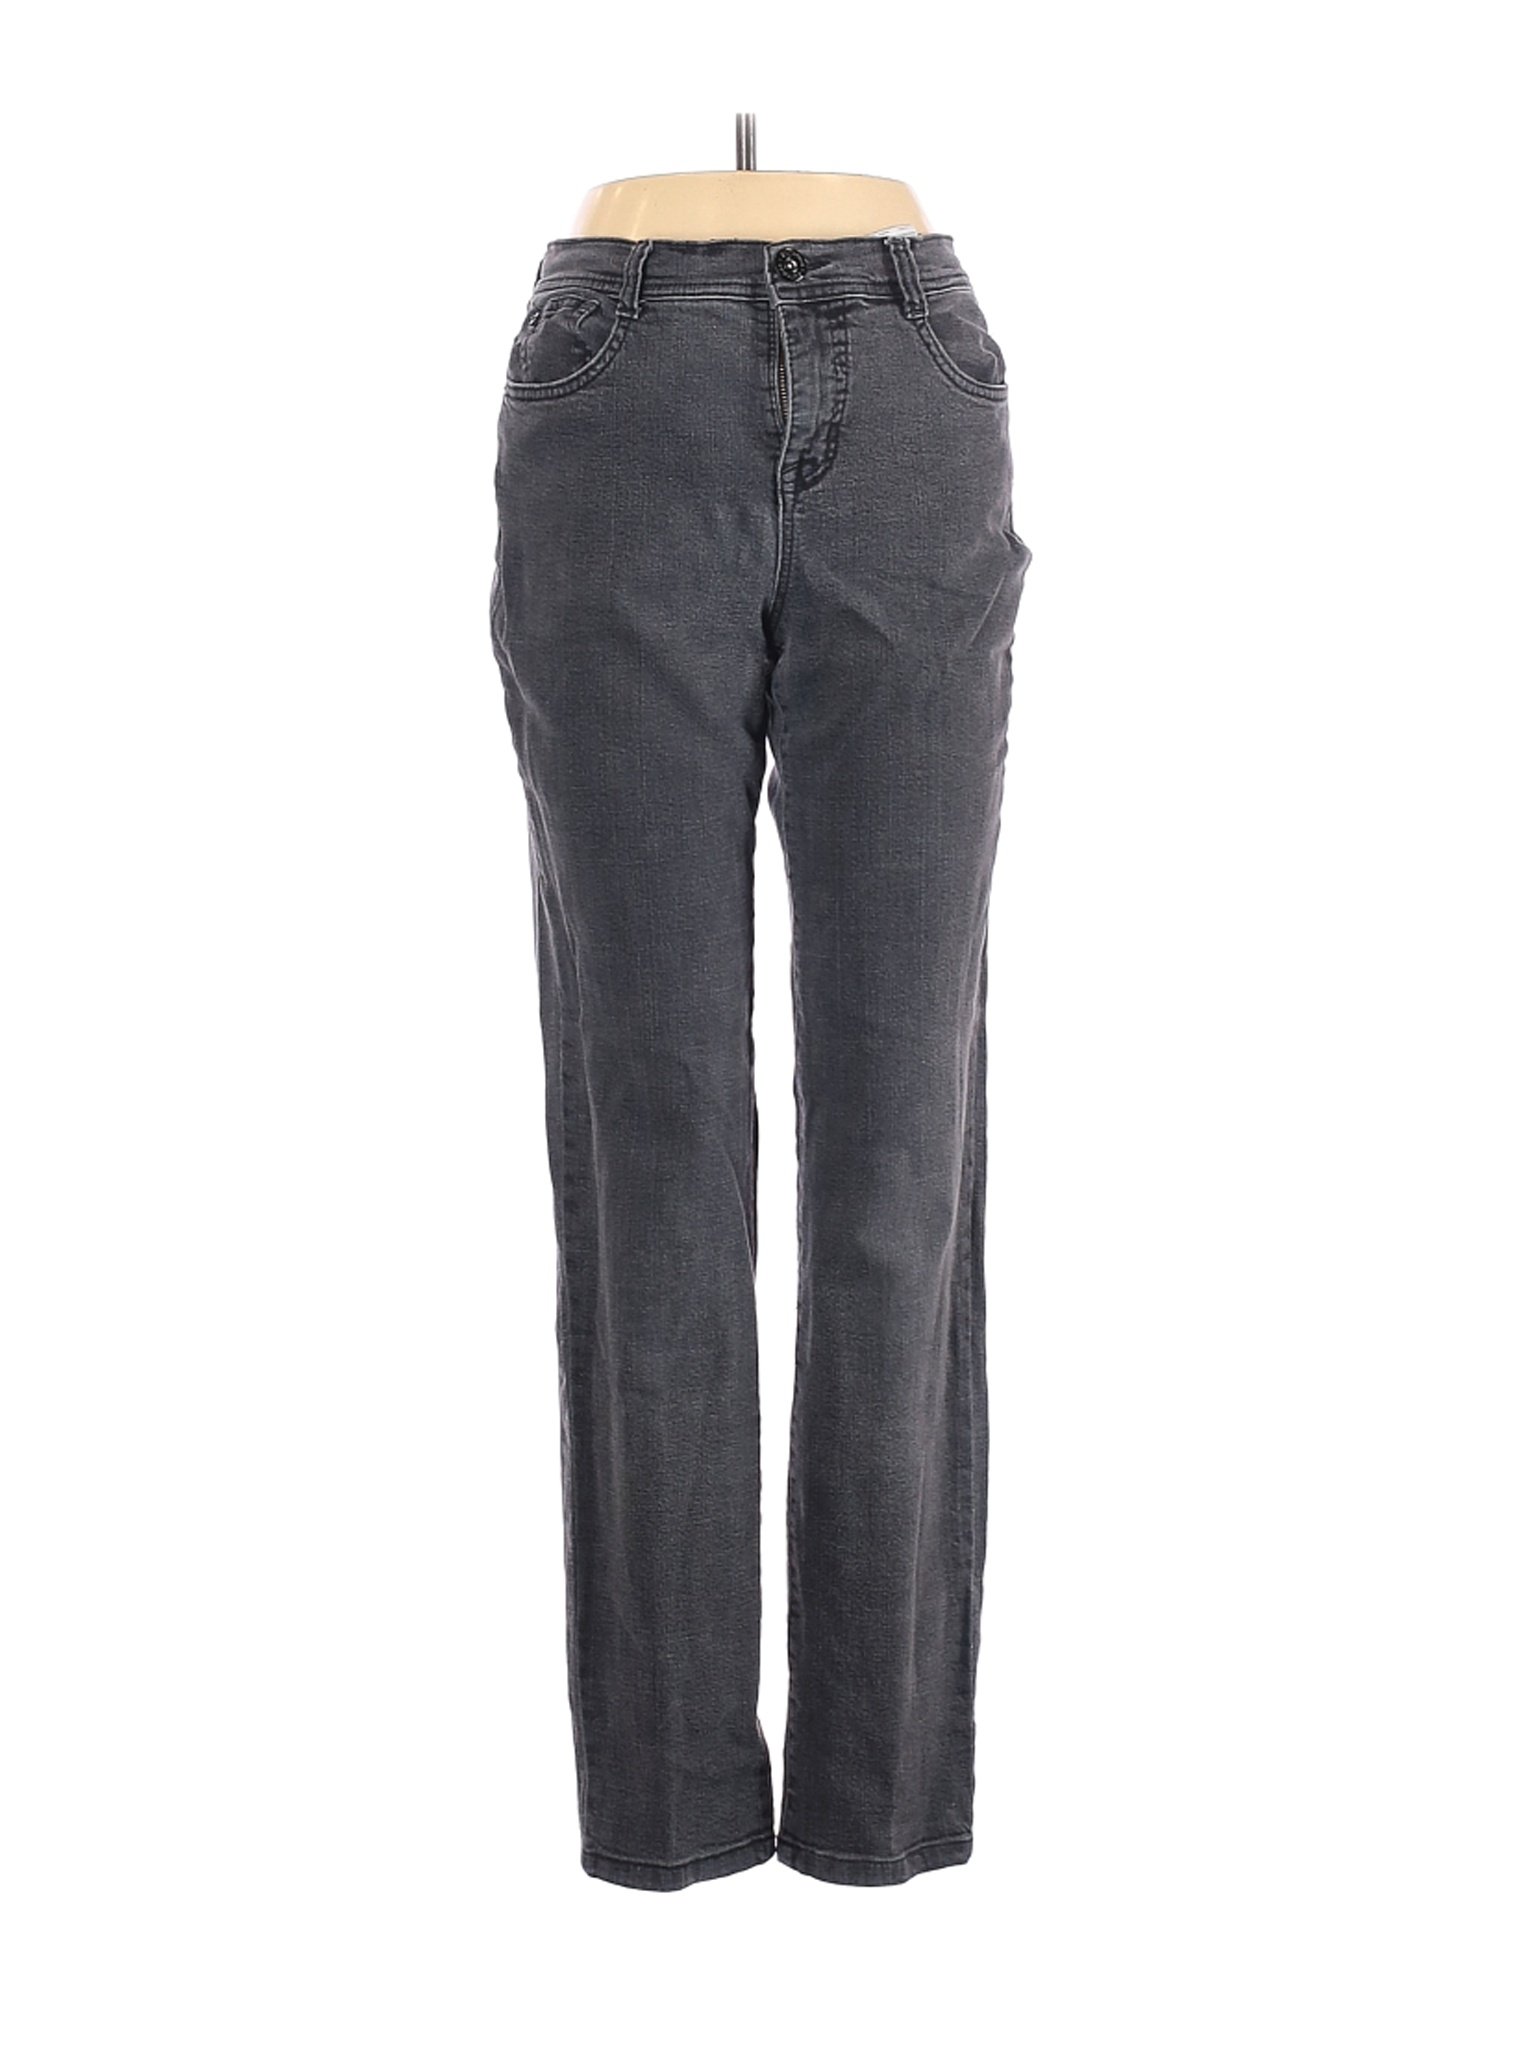 Styleandco Women Gray Jeans 4 Ebay